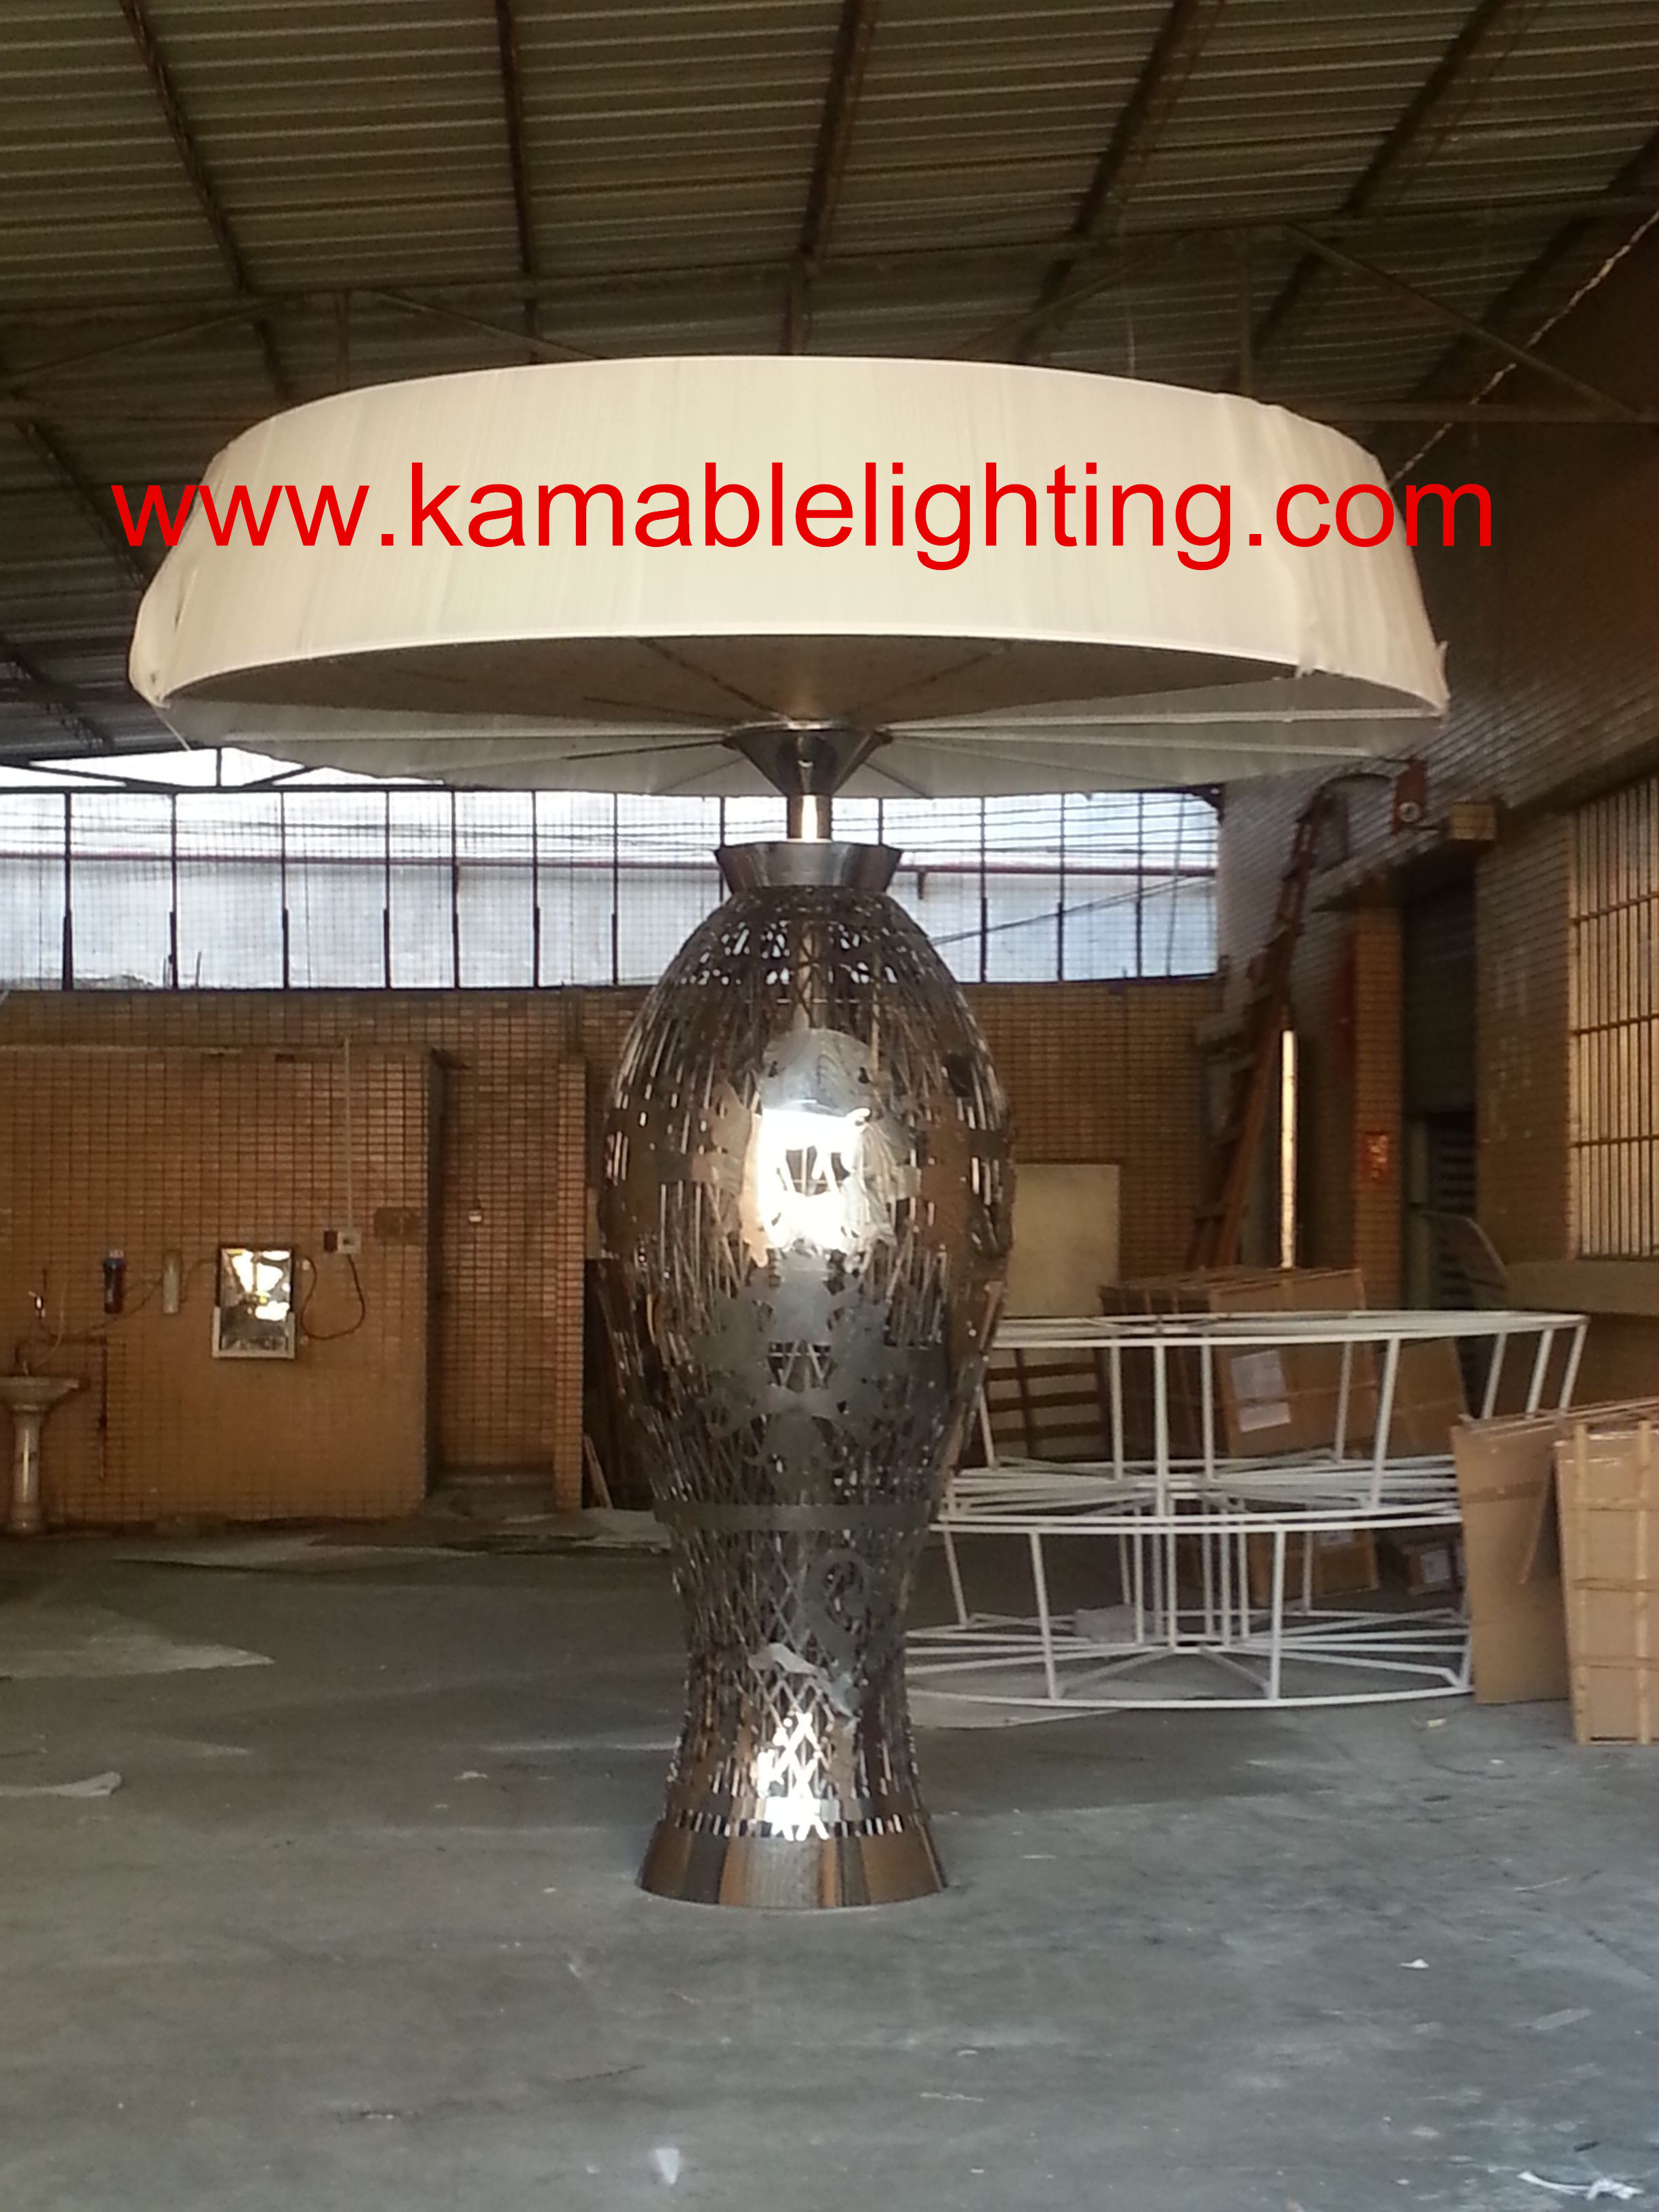 مصباح مشروع اللوبي الكبير الحديث الطراز (KAMA001)